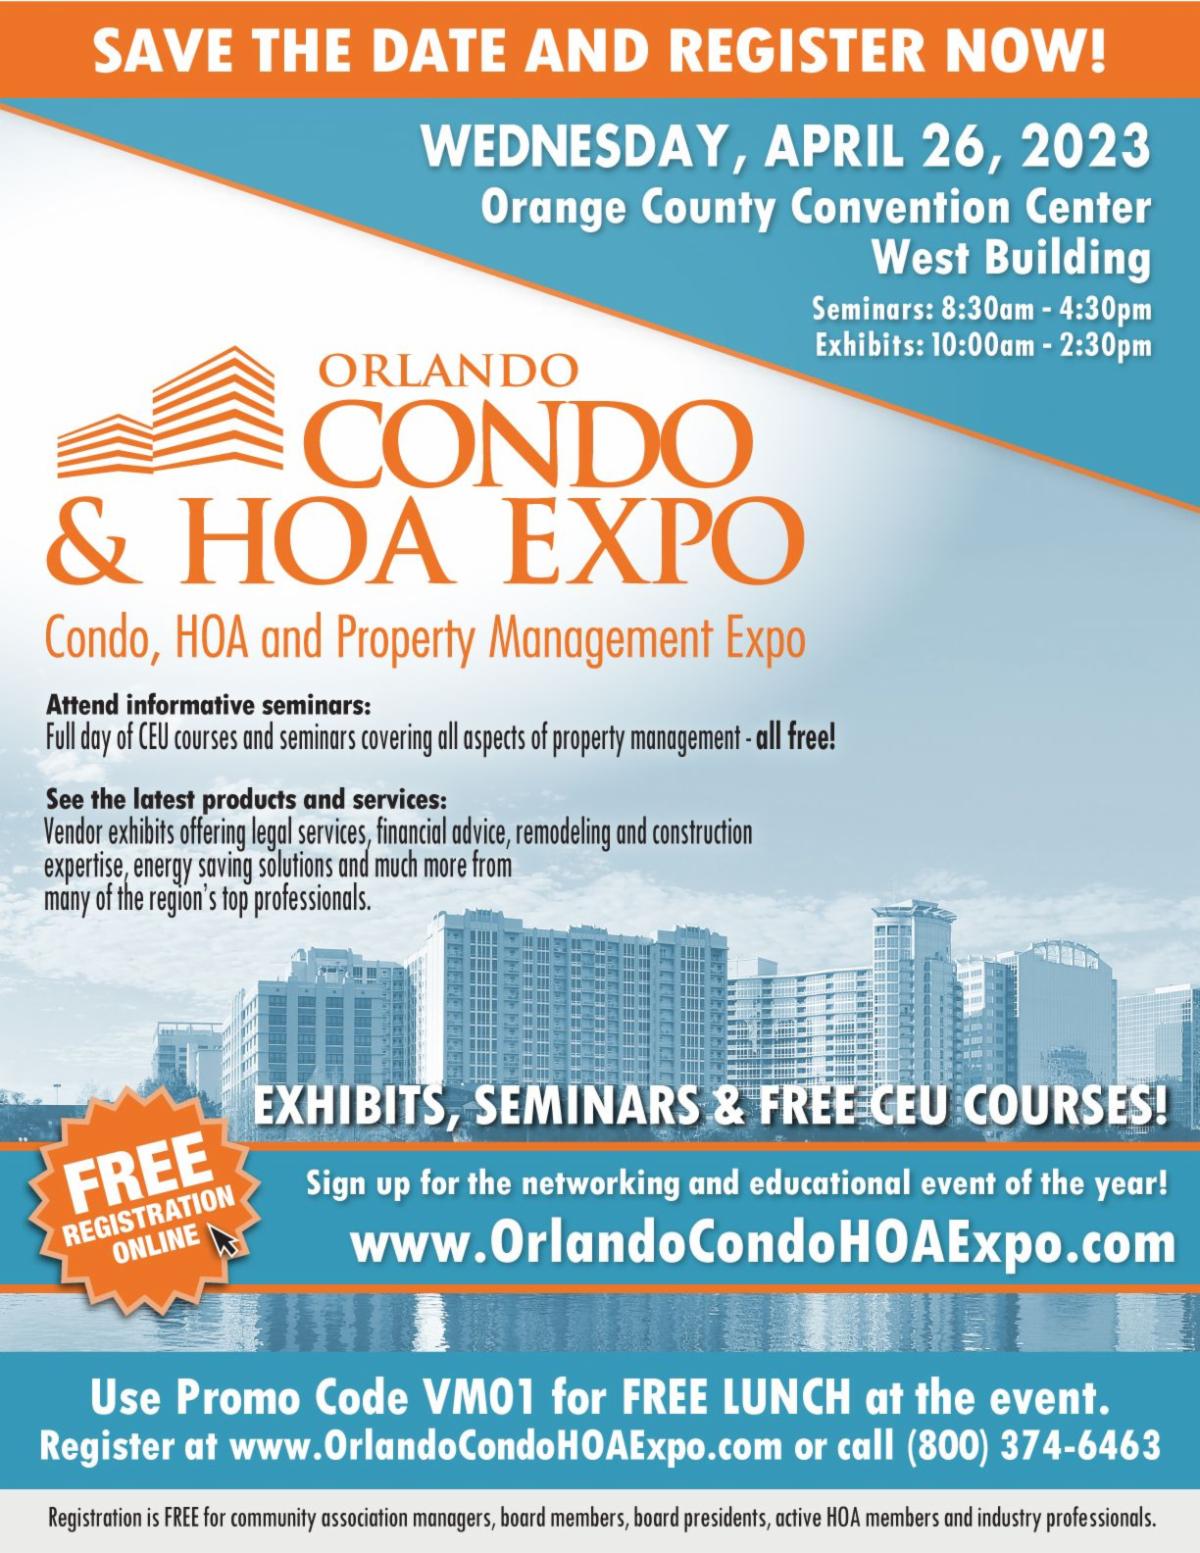 Orlando Condo and HOA Expo. APRIL 26TH, 2023 AT THE ORLANDO CONVENTION CENTER – ORANGE COUNTY.